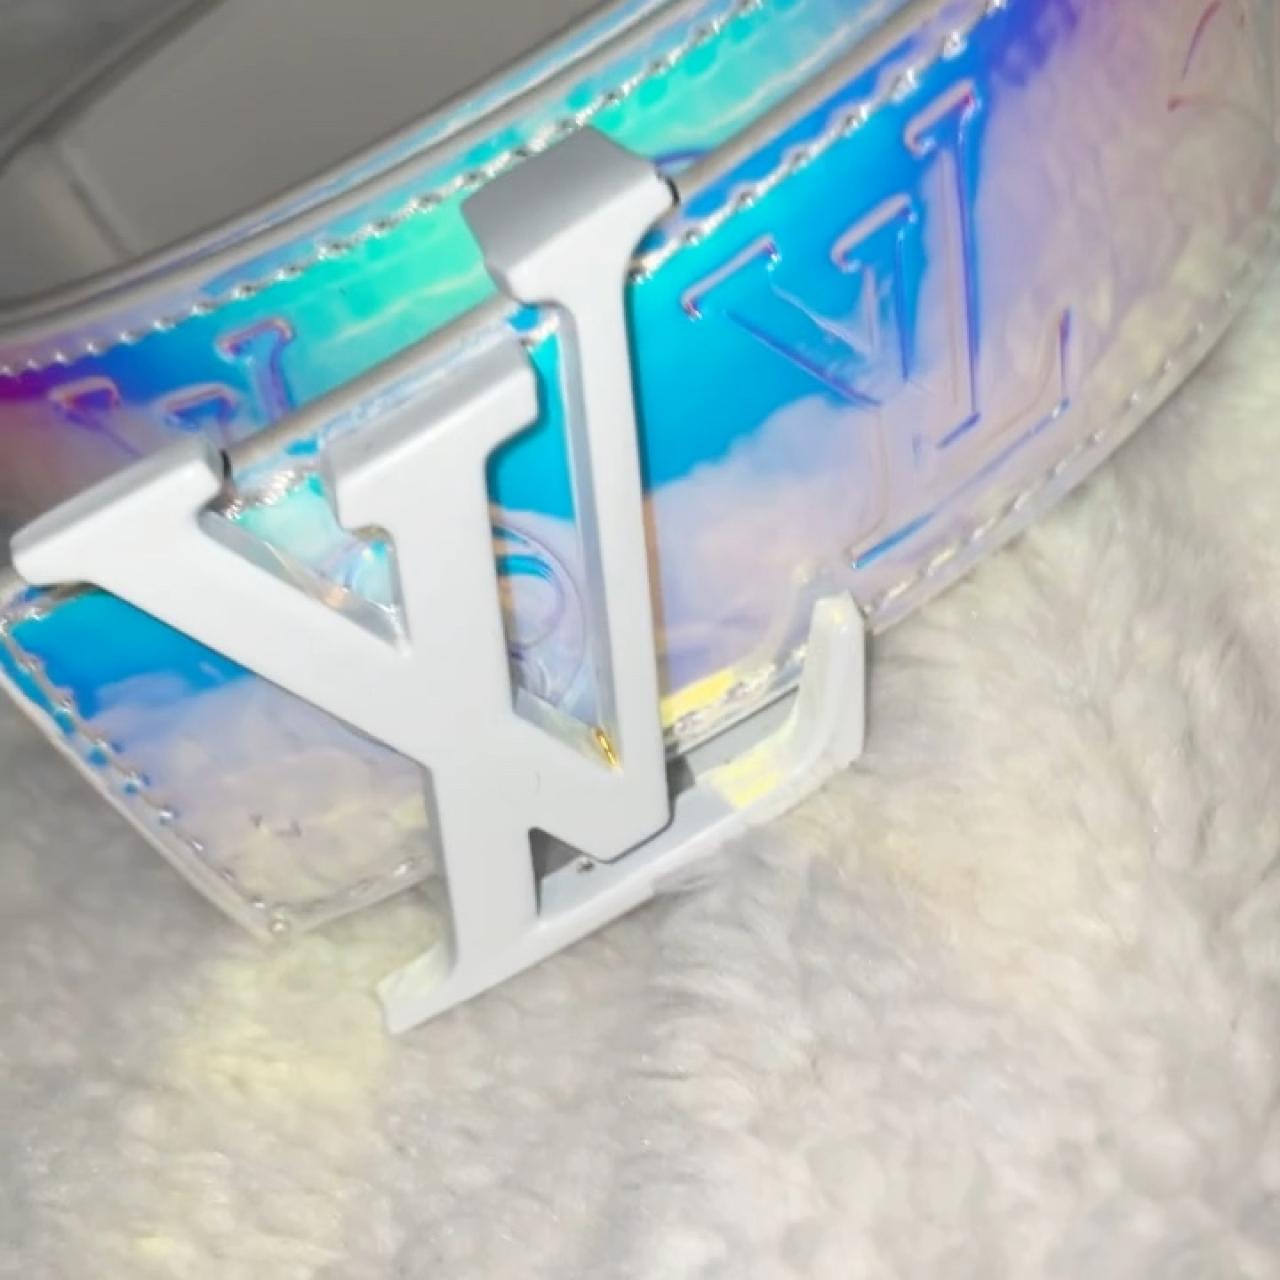 Louis Vuitton Men's Virgil Abloh LV Shape PVC Holographic Prism